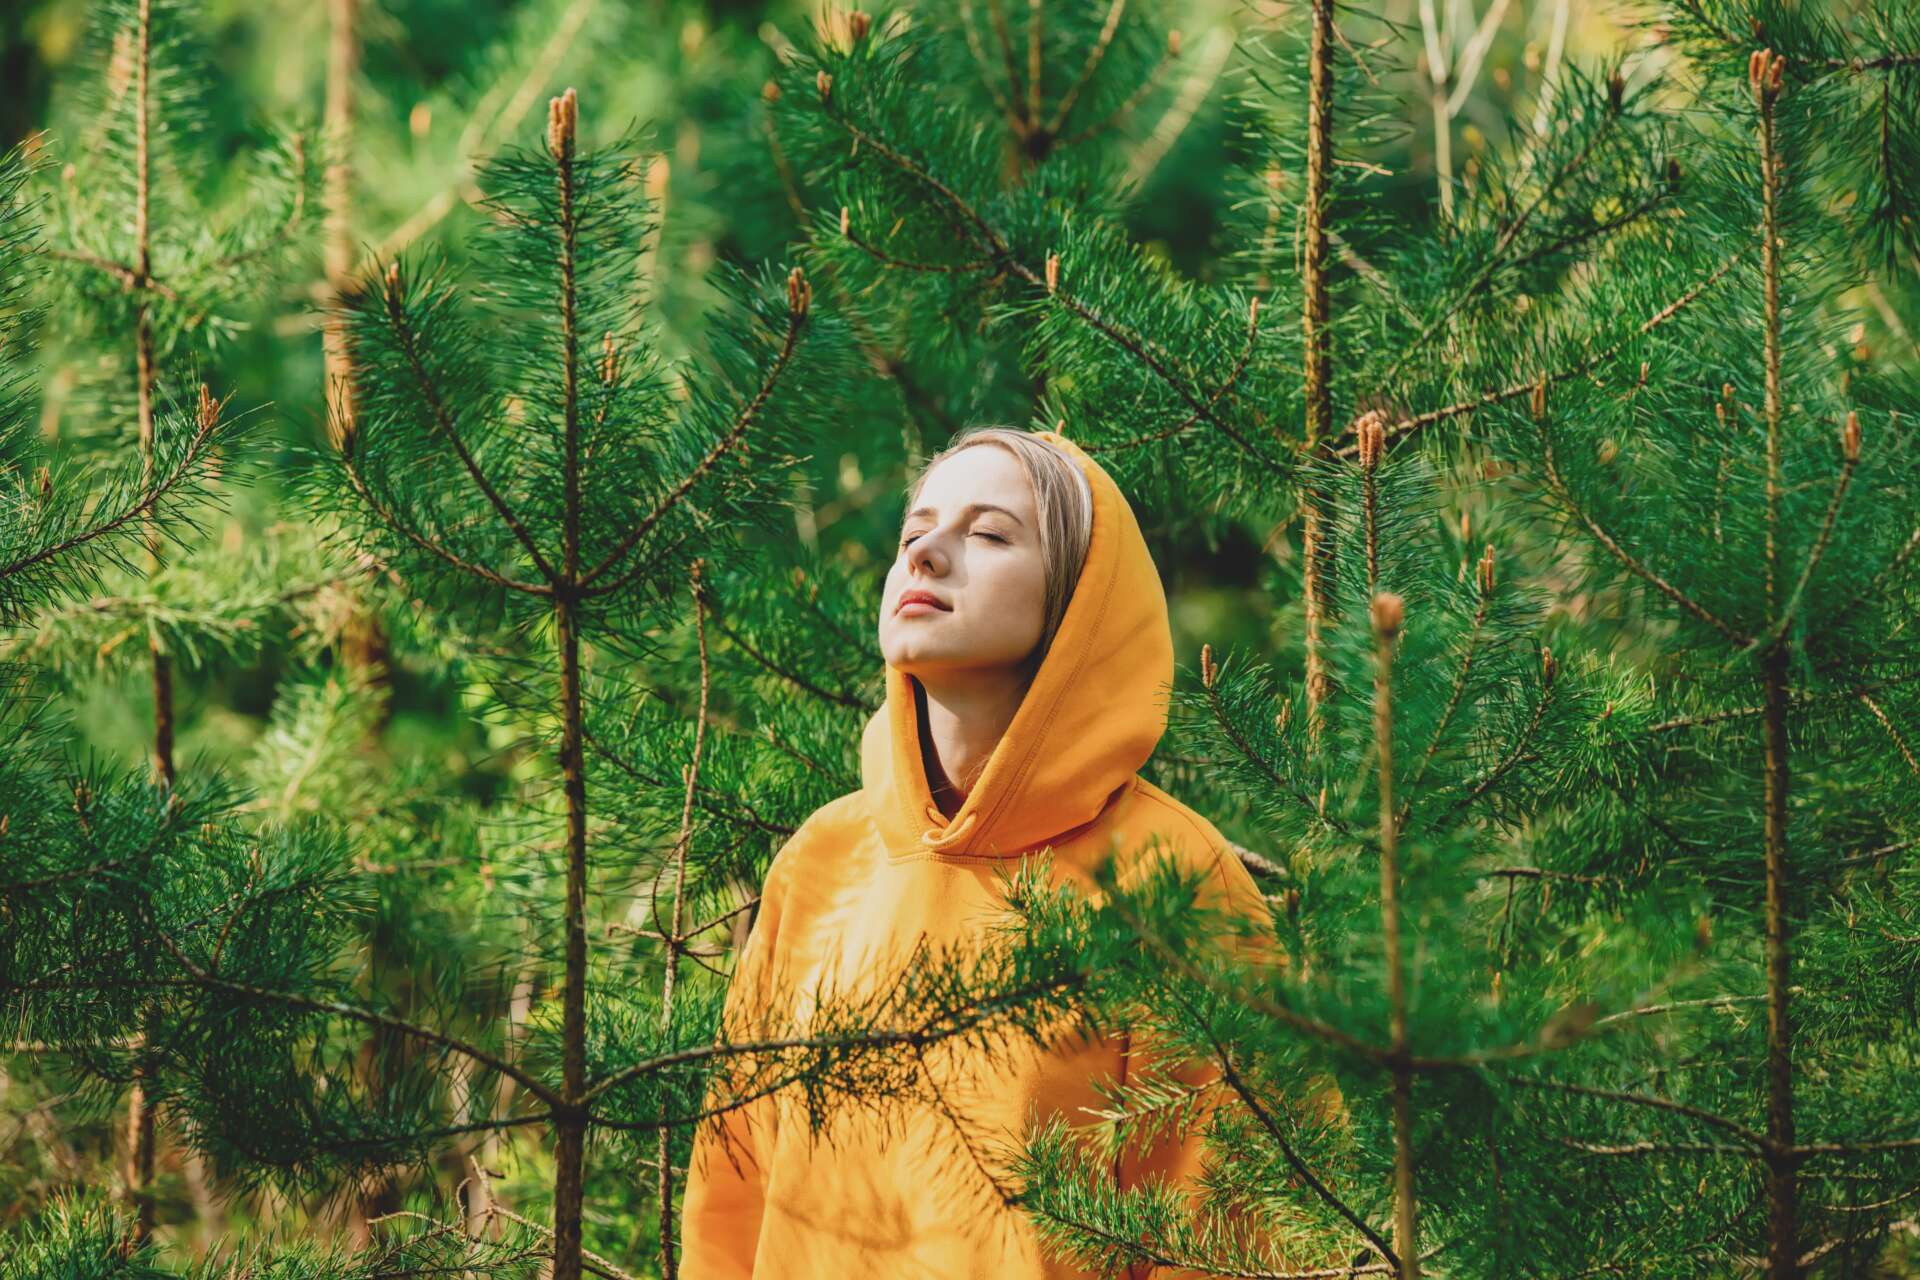 Keltaiseen huppariin pukeutunut tyttö seisoo silmät kiinni mäntyjen keskellä kuuntelemassa luonnon ääniä.